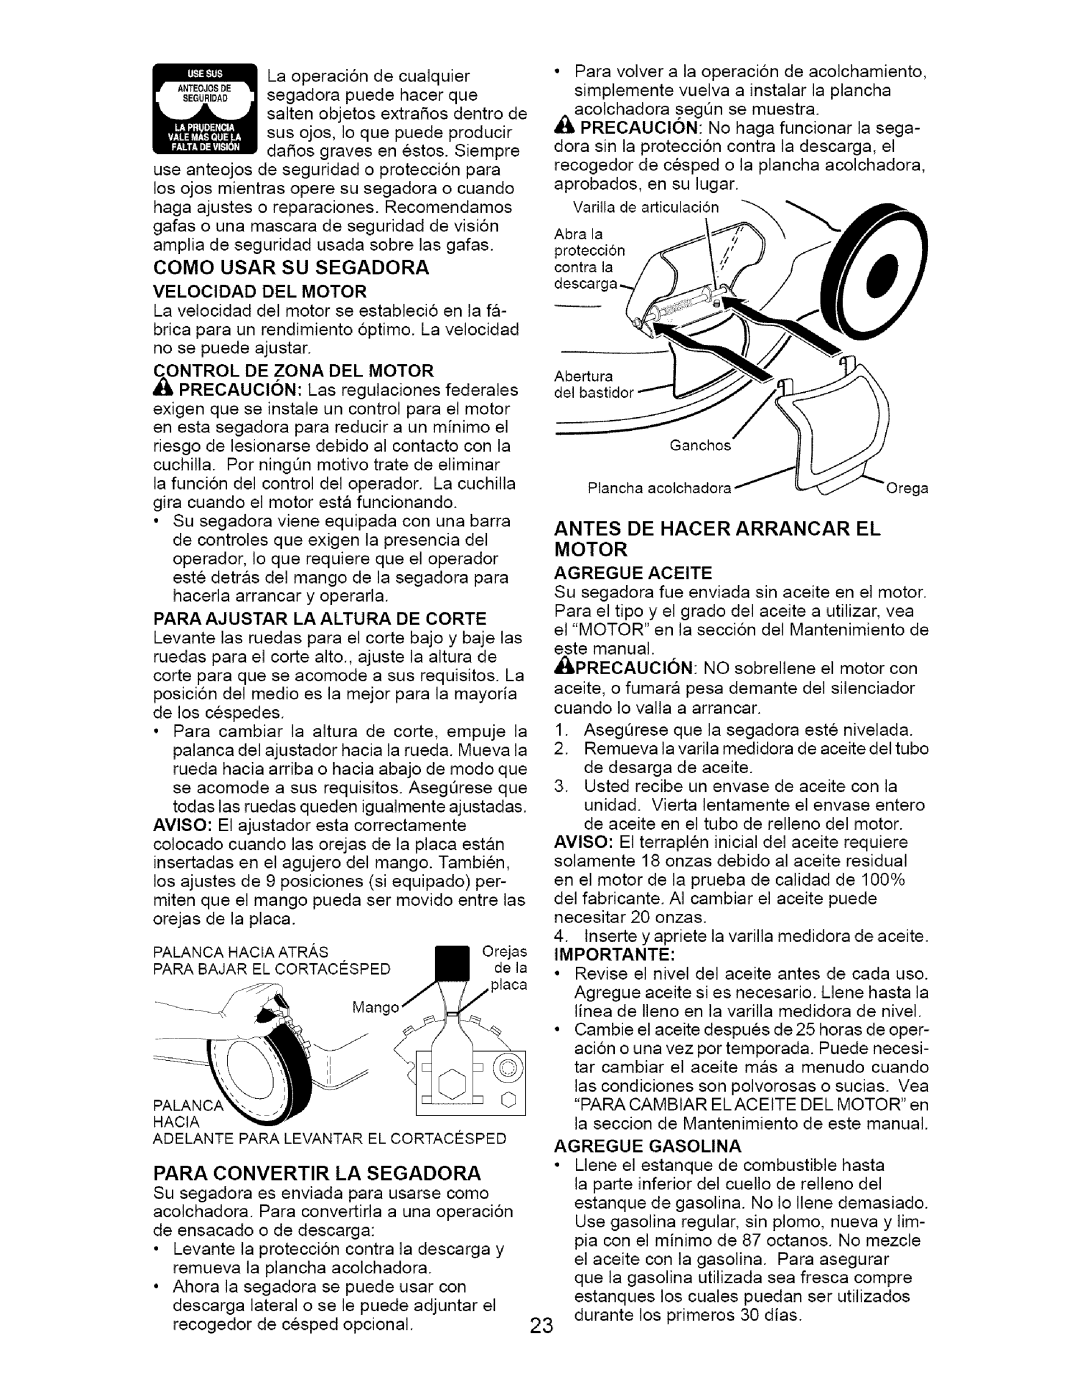 Craftsman 917.37134 owner manual Como Usar Su Segadora Velocidad Del Motor, Motor Agregue Aceite 